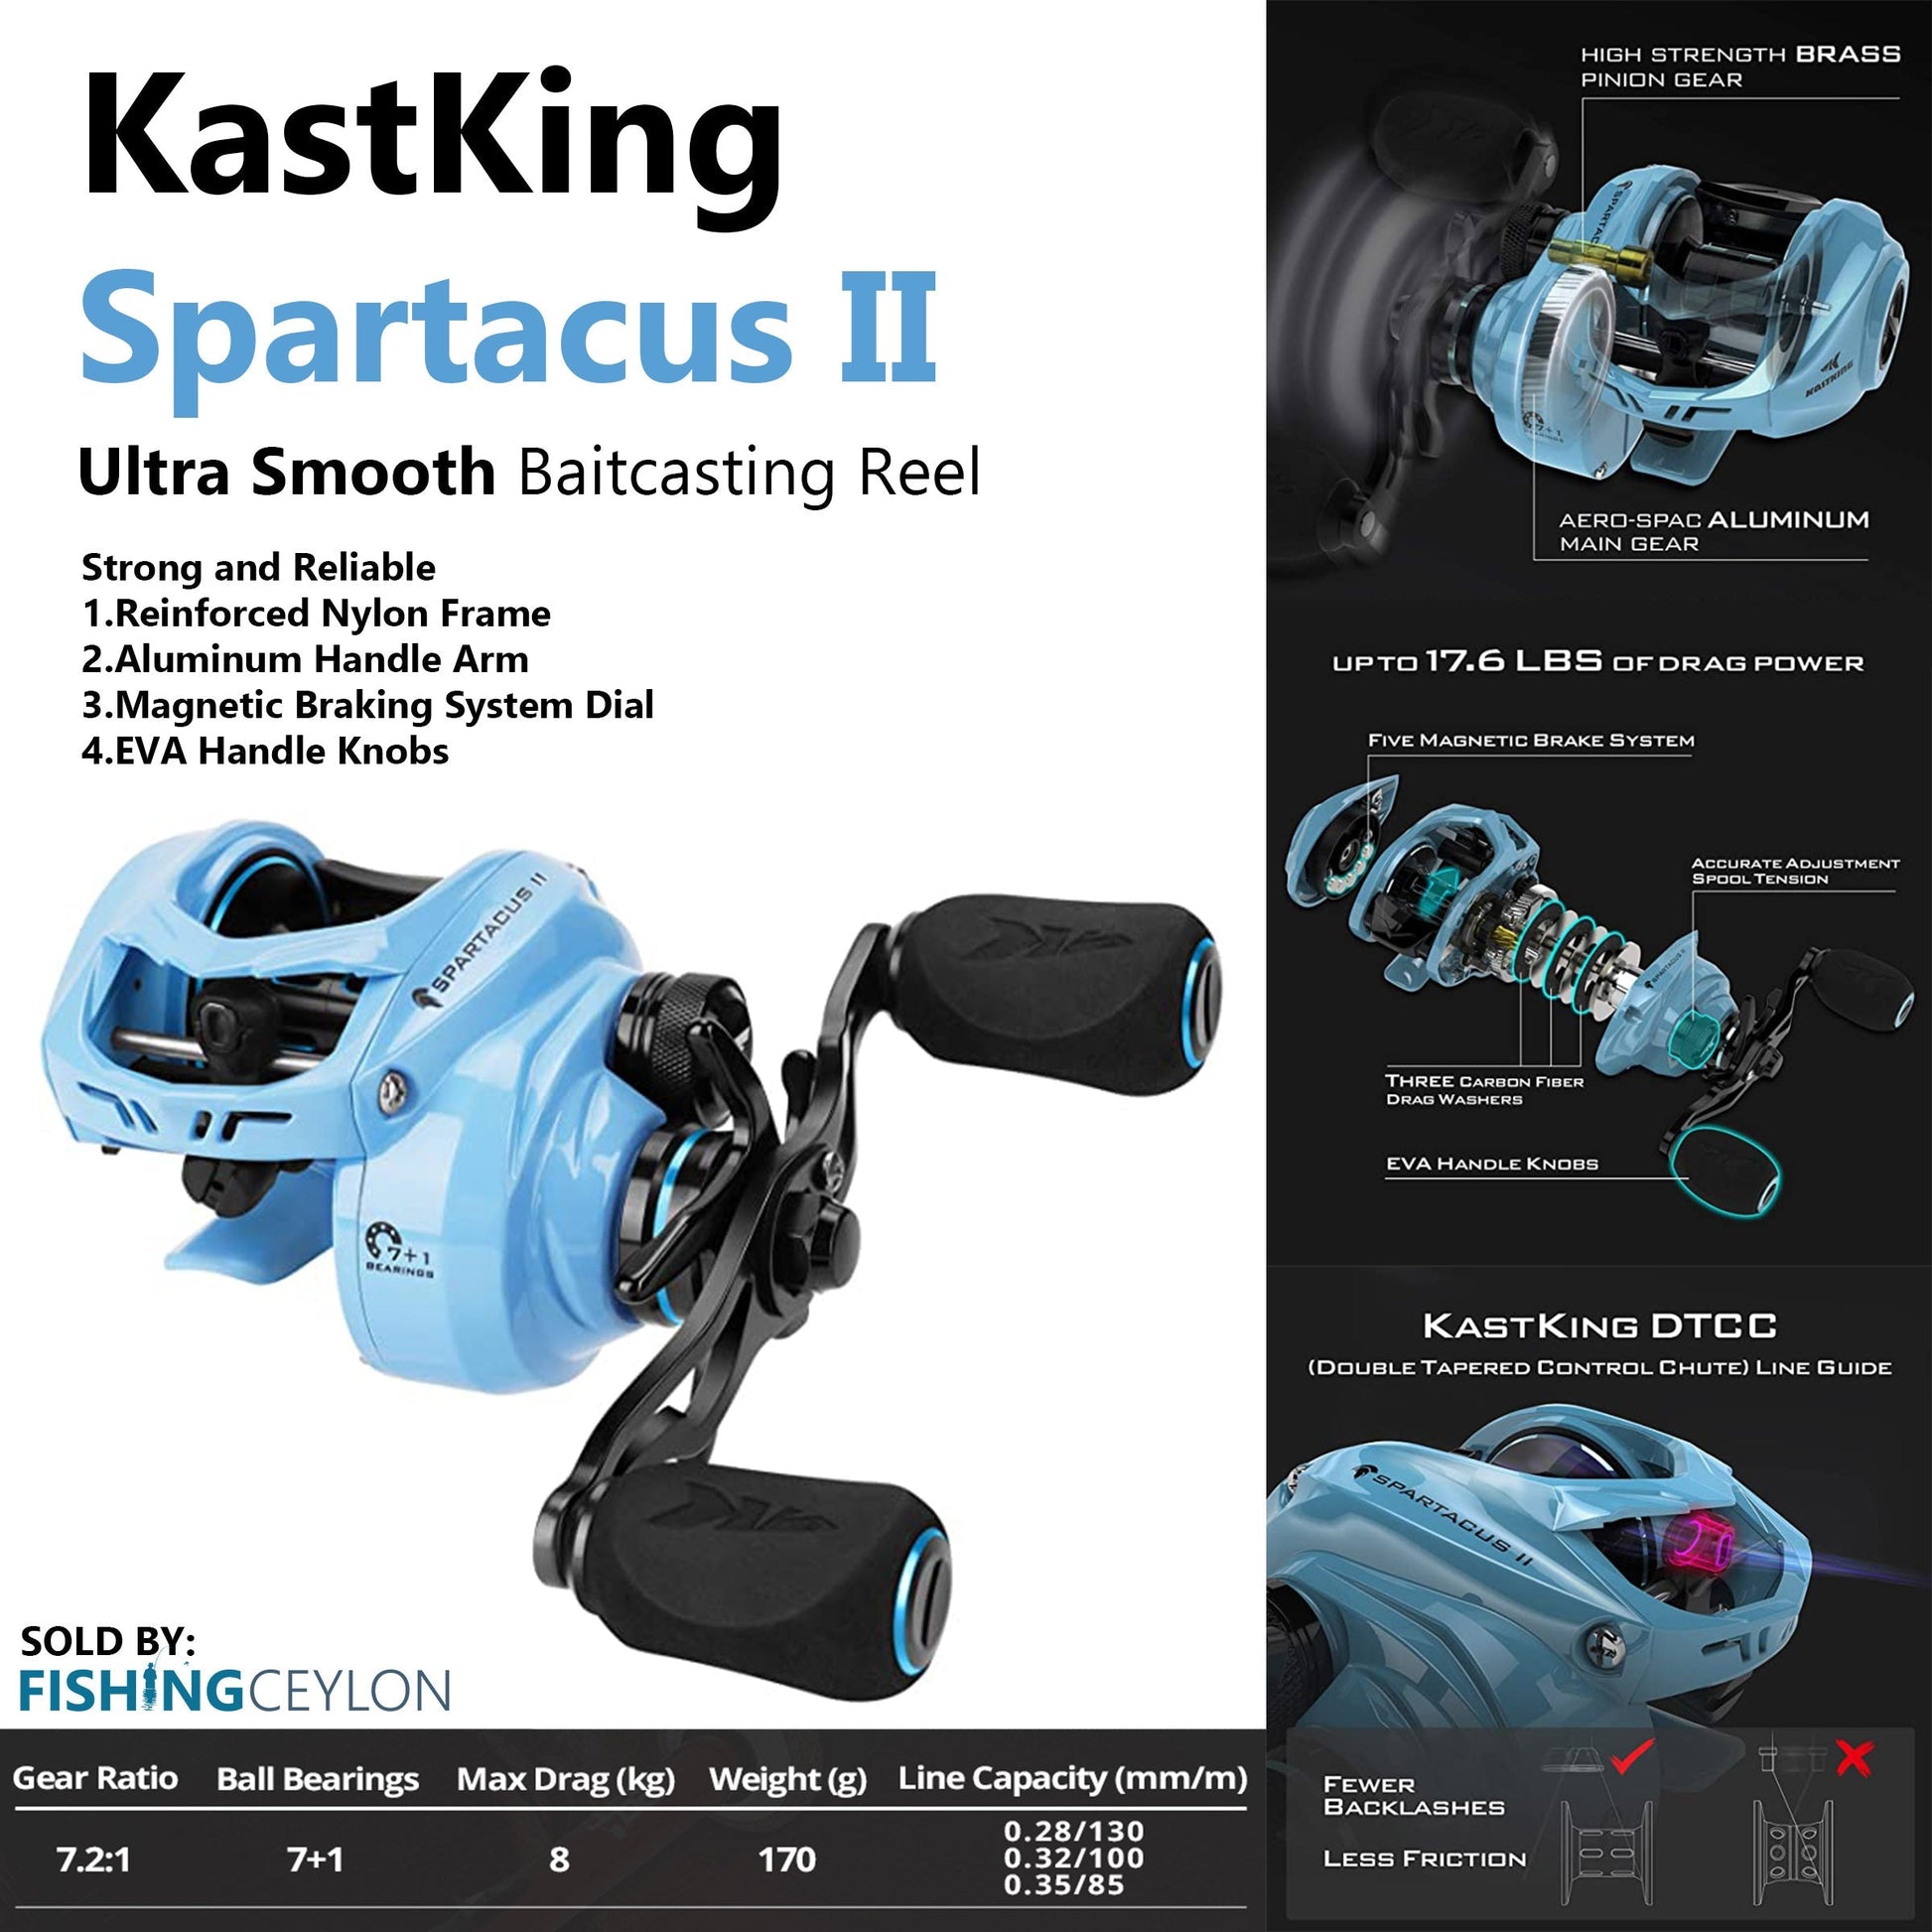 KastKing Spartacus II Baitcasting Reel